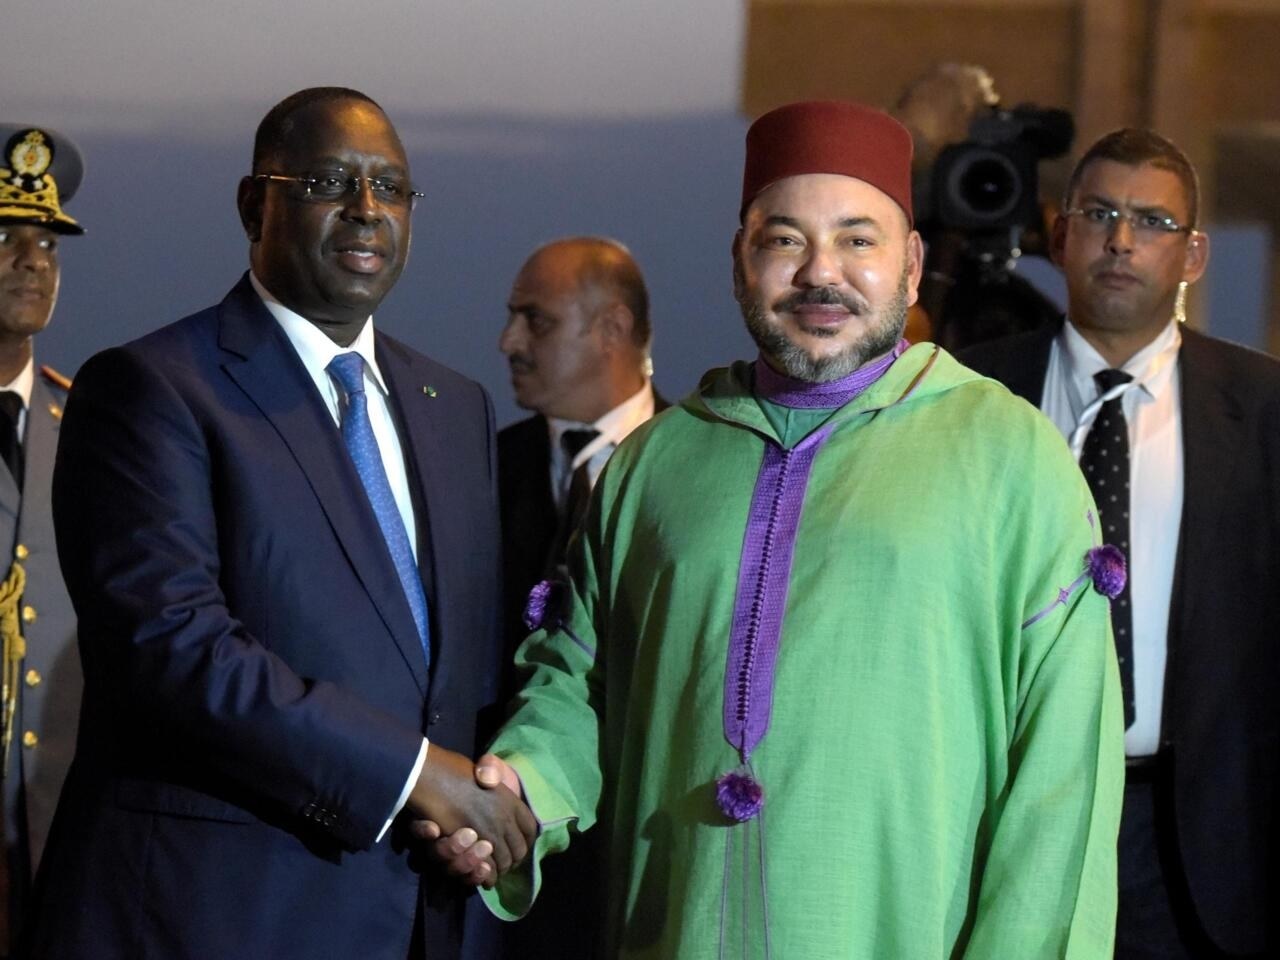 La main invisible du Roi du Maroc en coulisse, Levée des barrières chez Sonko